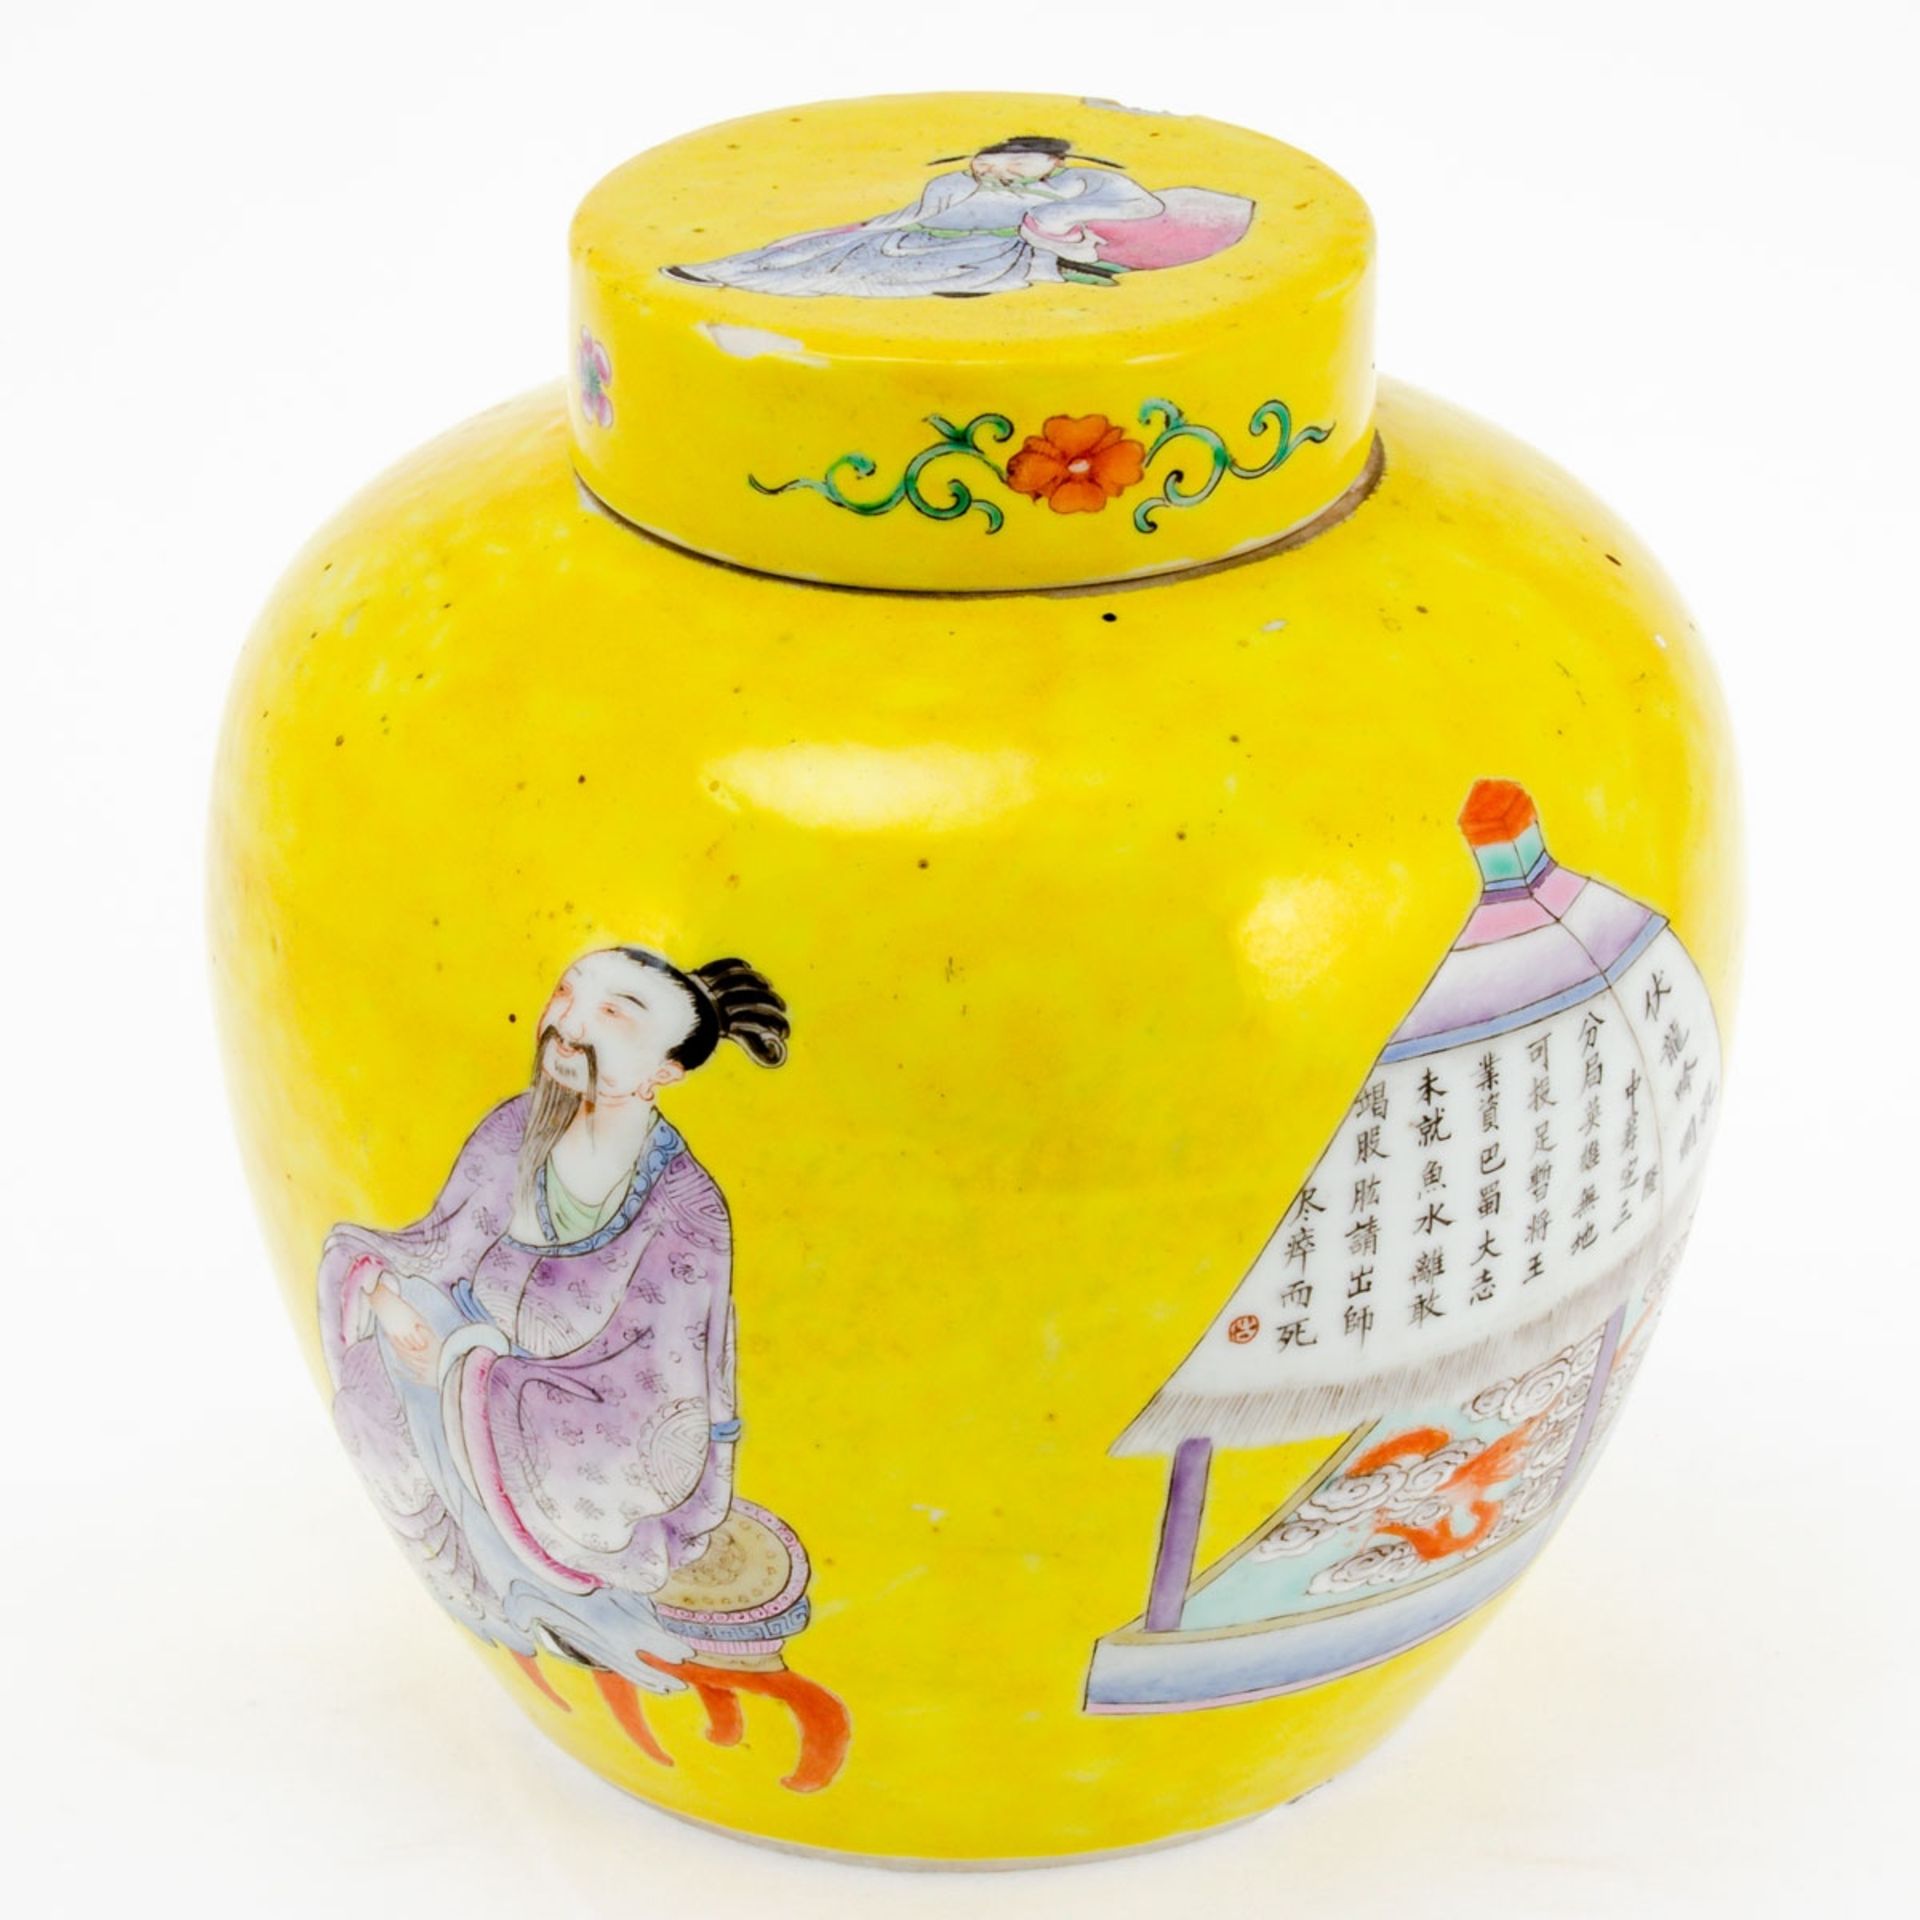 Deckelvase China, späte Qing-Dynastie. Porzellan, weiß, glasiert. Gelber Fond. H. mit / ohn